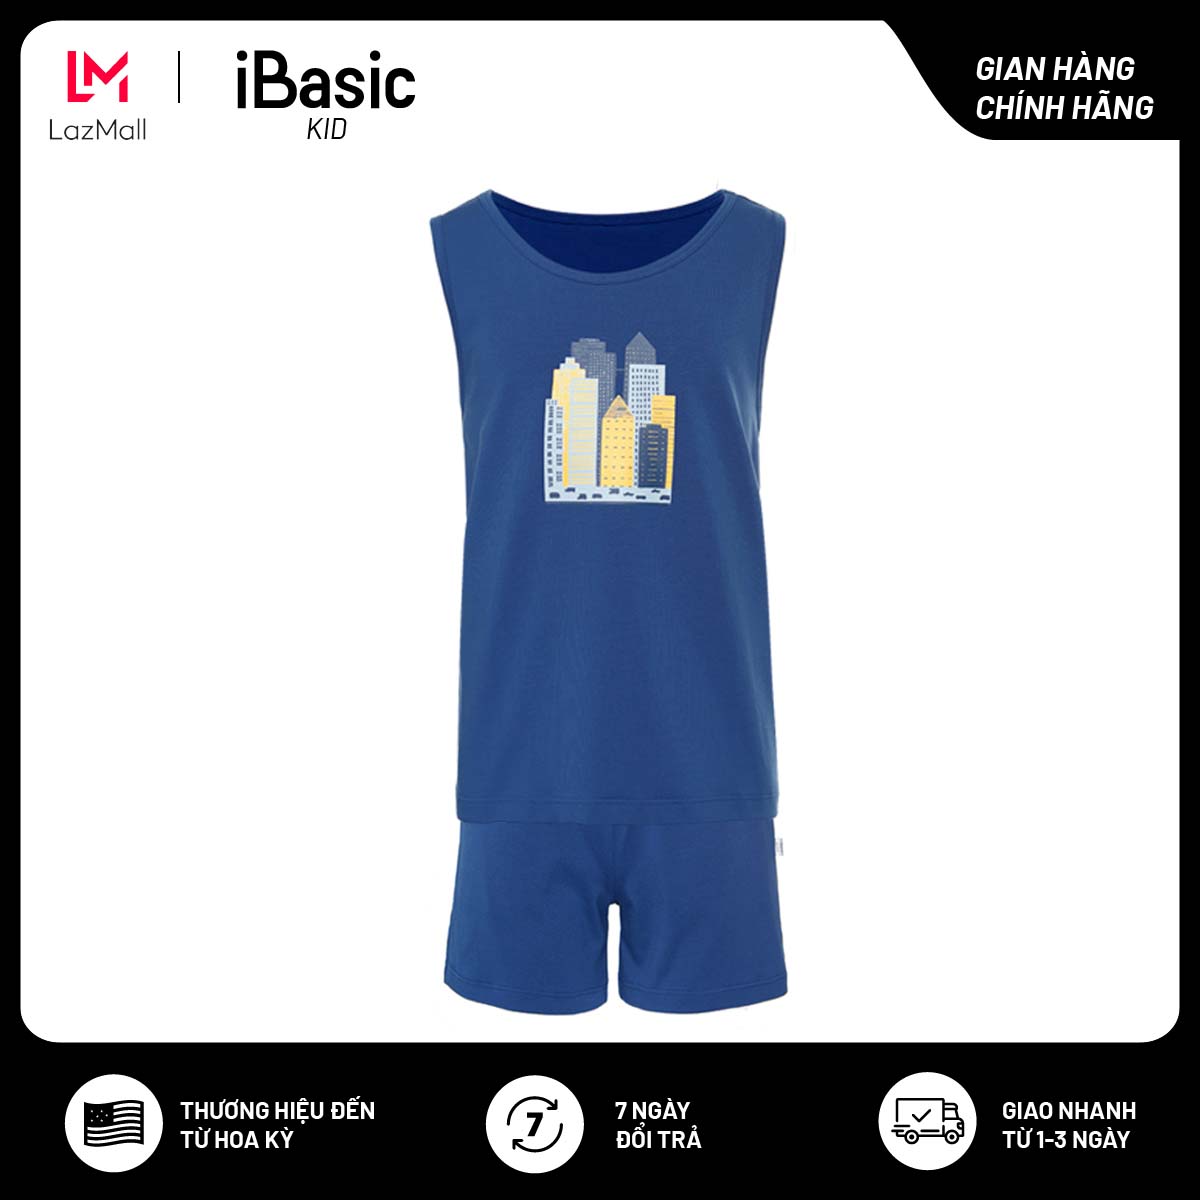 Bộ áo thun cotton mặc nhà bé trai ba lỗ hình in iBasic HOMB006T và quần HOMB006B